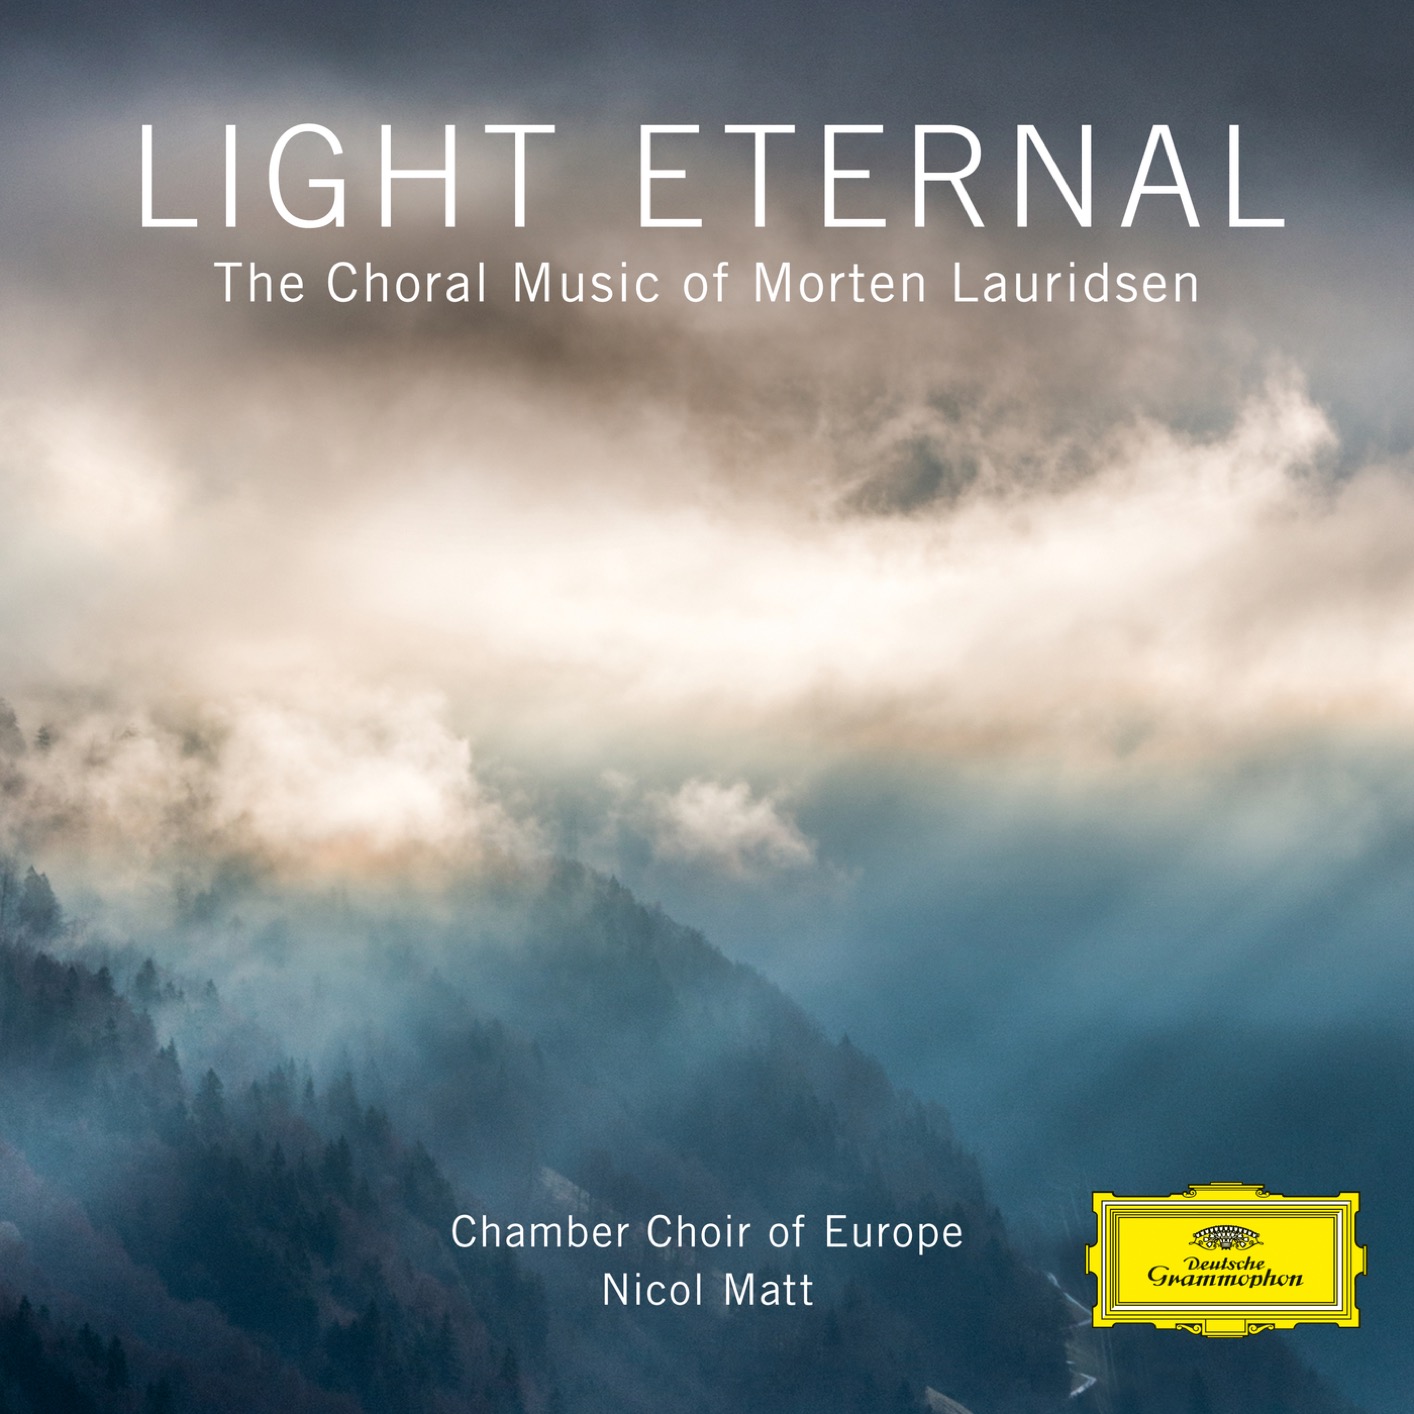 Chamber Choir of EuropeI & Nicol Matt - Light Eternal - The Choral Music of Morten Lauridsen (2018) [FLAC 24bit/88,2kHz]